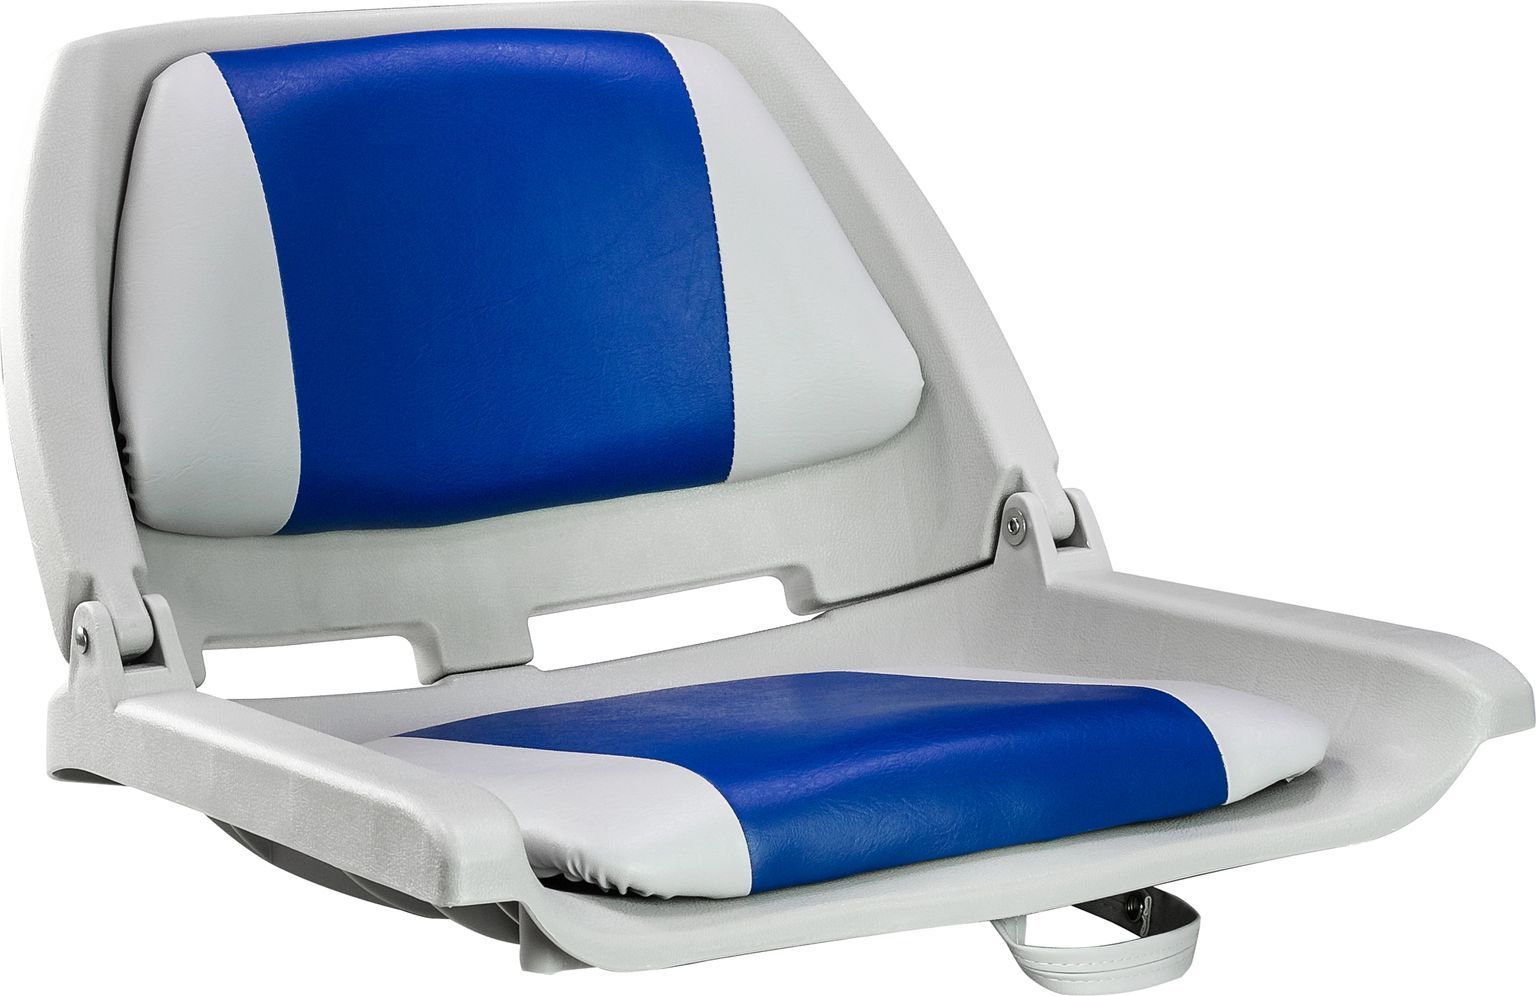 Кресло пластмассовое складное с подложкой Molded Fold-Down Boat Seat,серый/голубой 75109GB planets goonhilly down